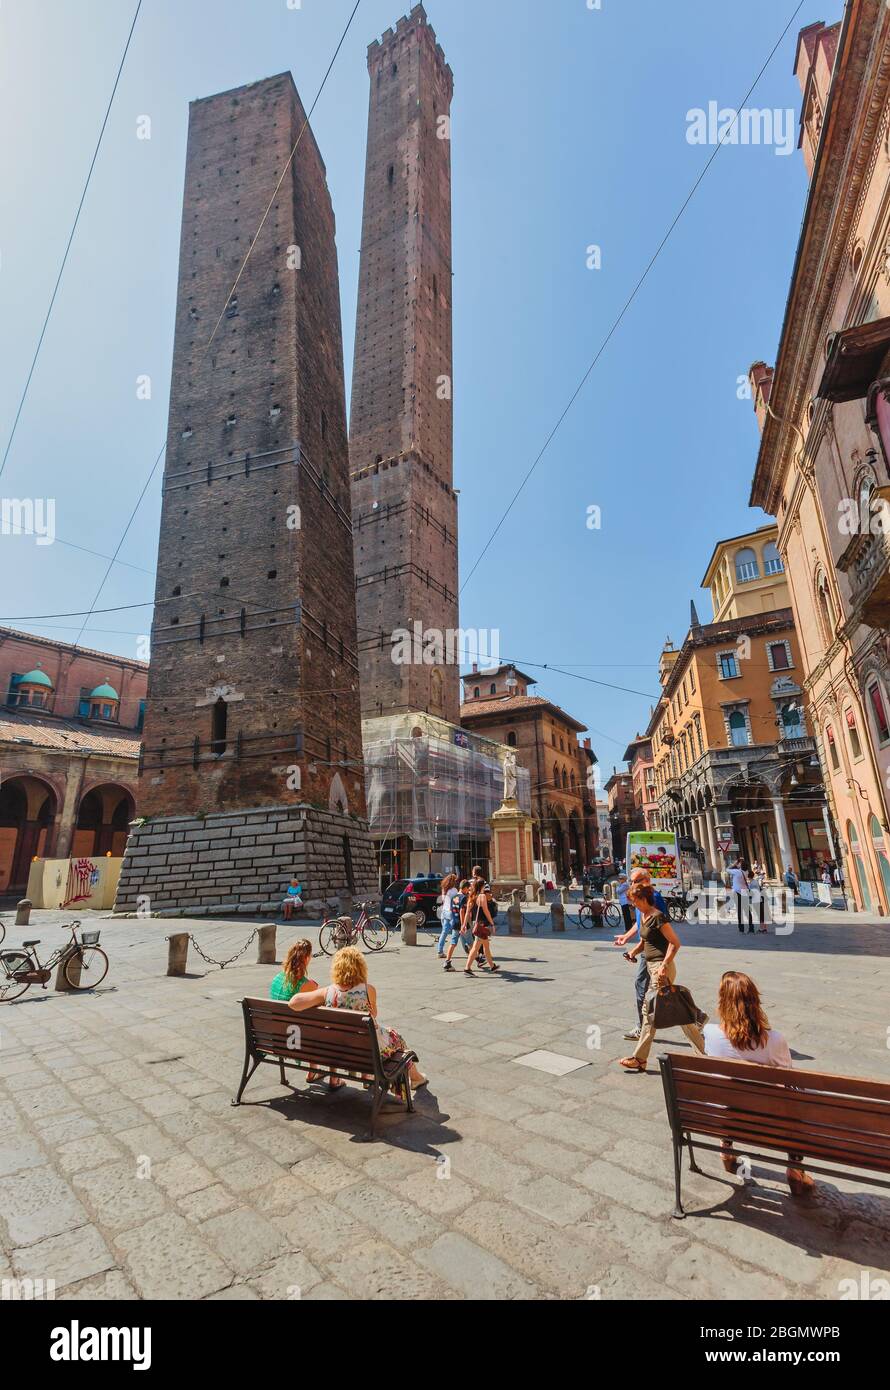 Bolonia, Emilia-Romaña, Italia. El Duo Torres, o dos Torres, en la Piazza di Porto Ravegnana. La torre más alta es la Torre degli Asinelli, la pequeña Foto de stock